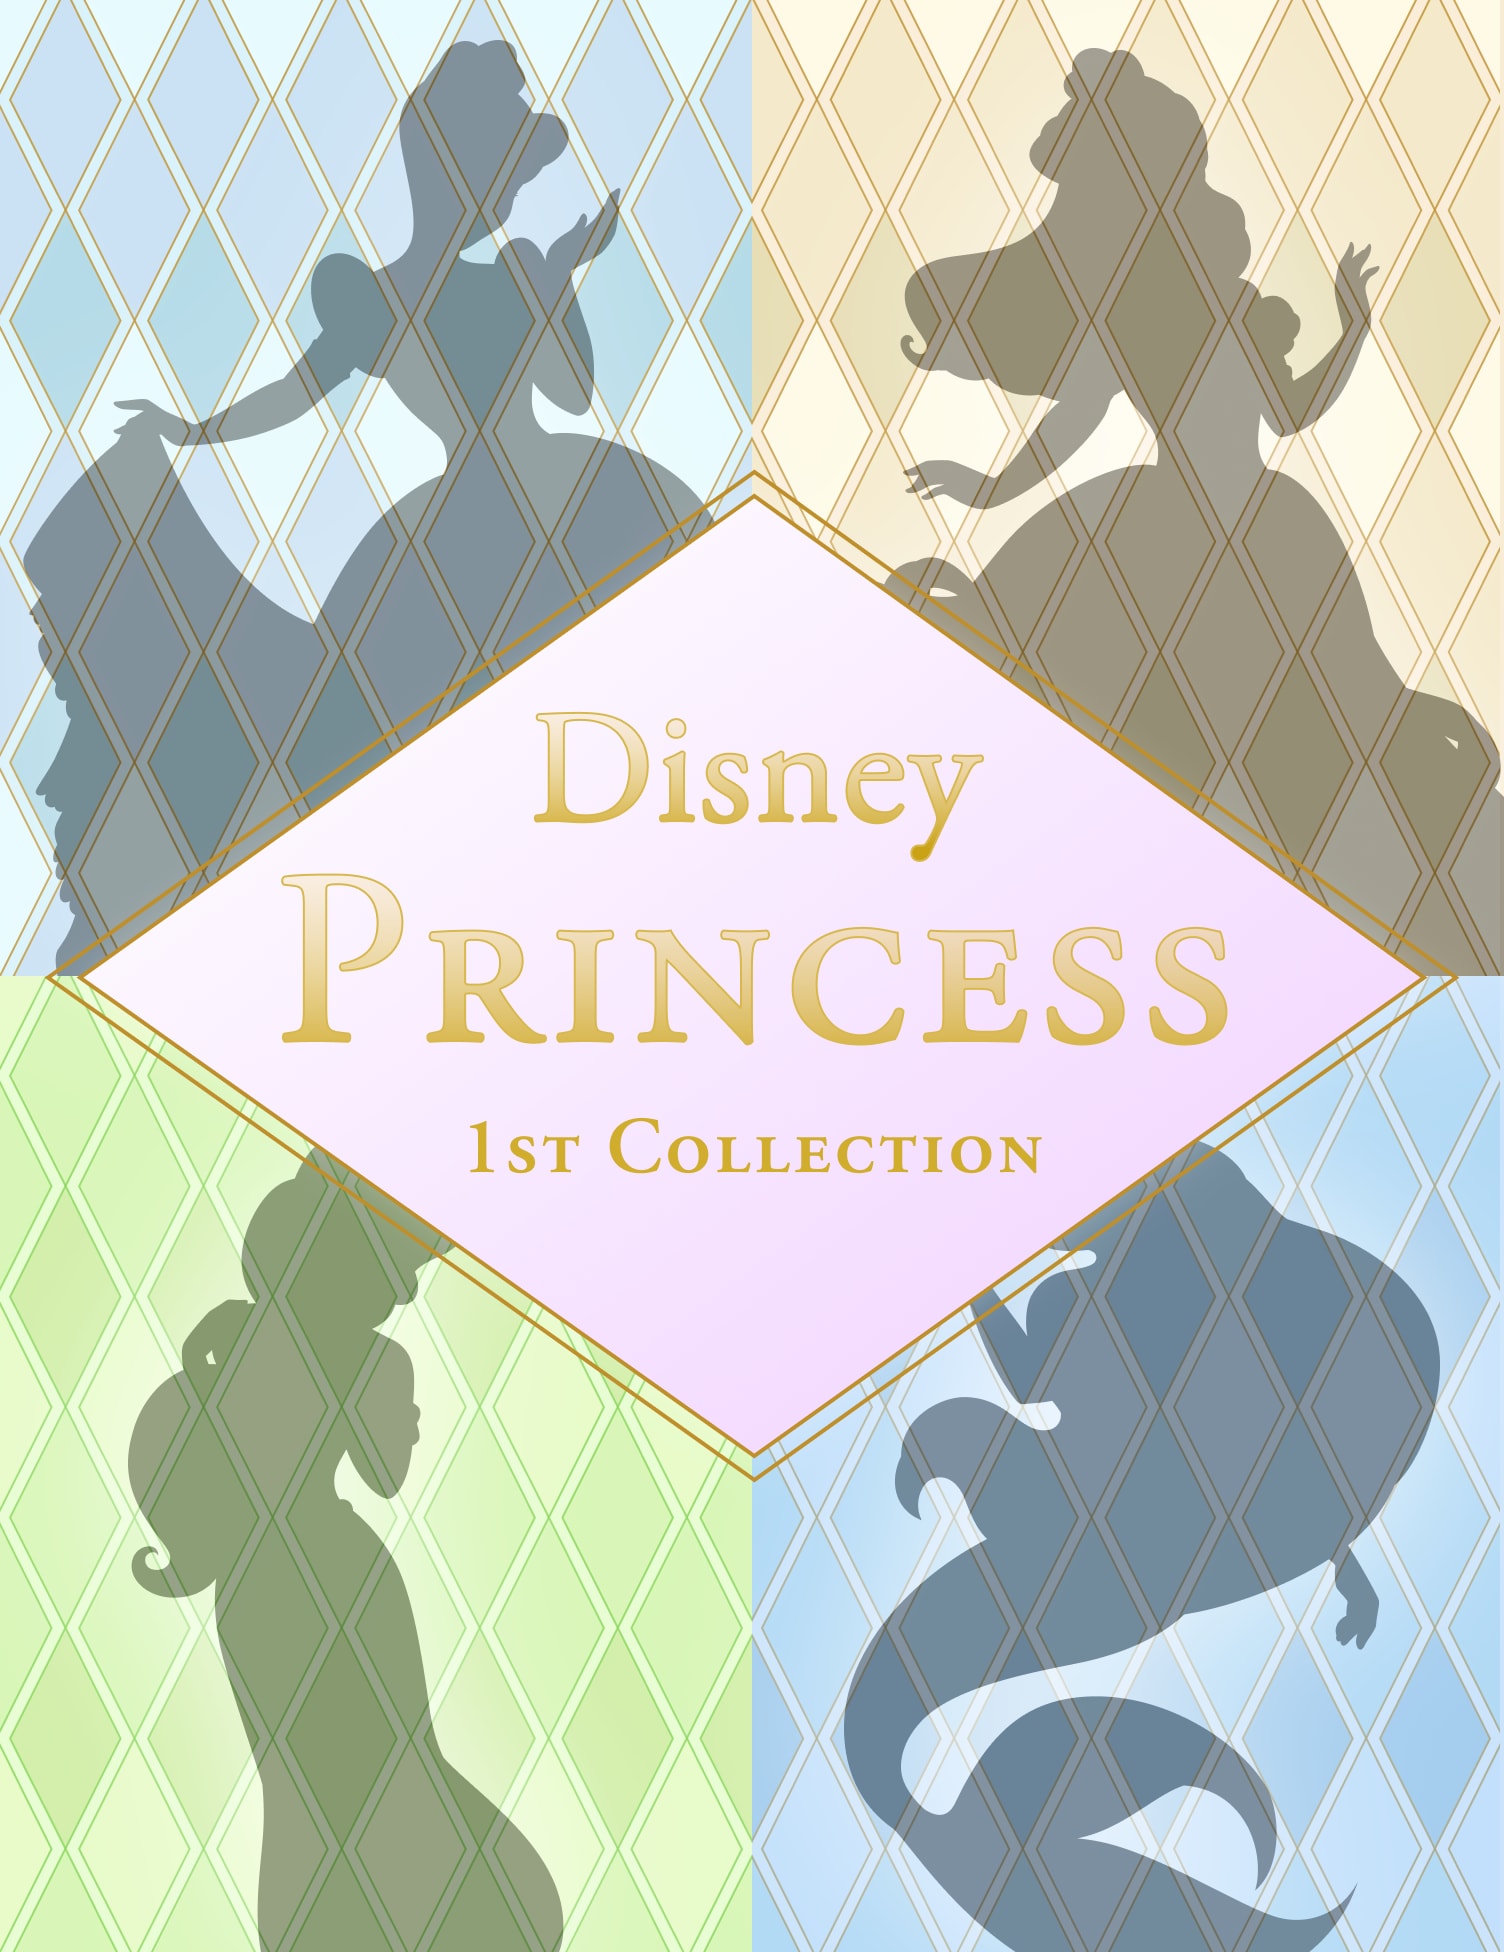 プリンセスのディズニーコーデ・バウンドコーデの画像